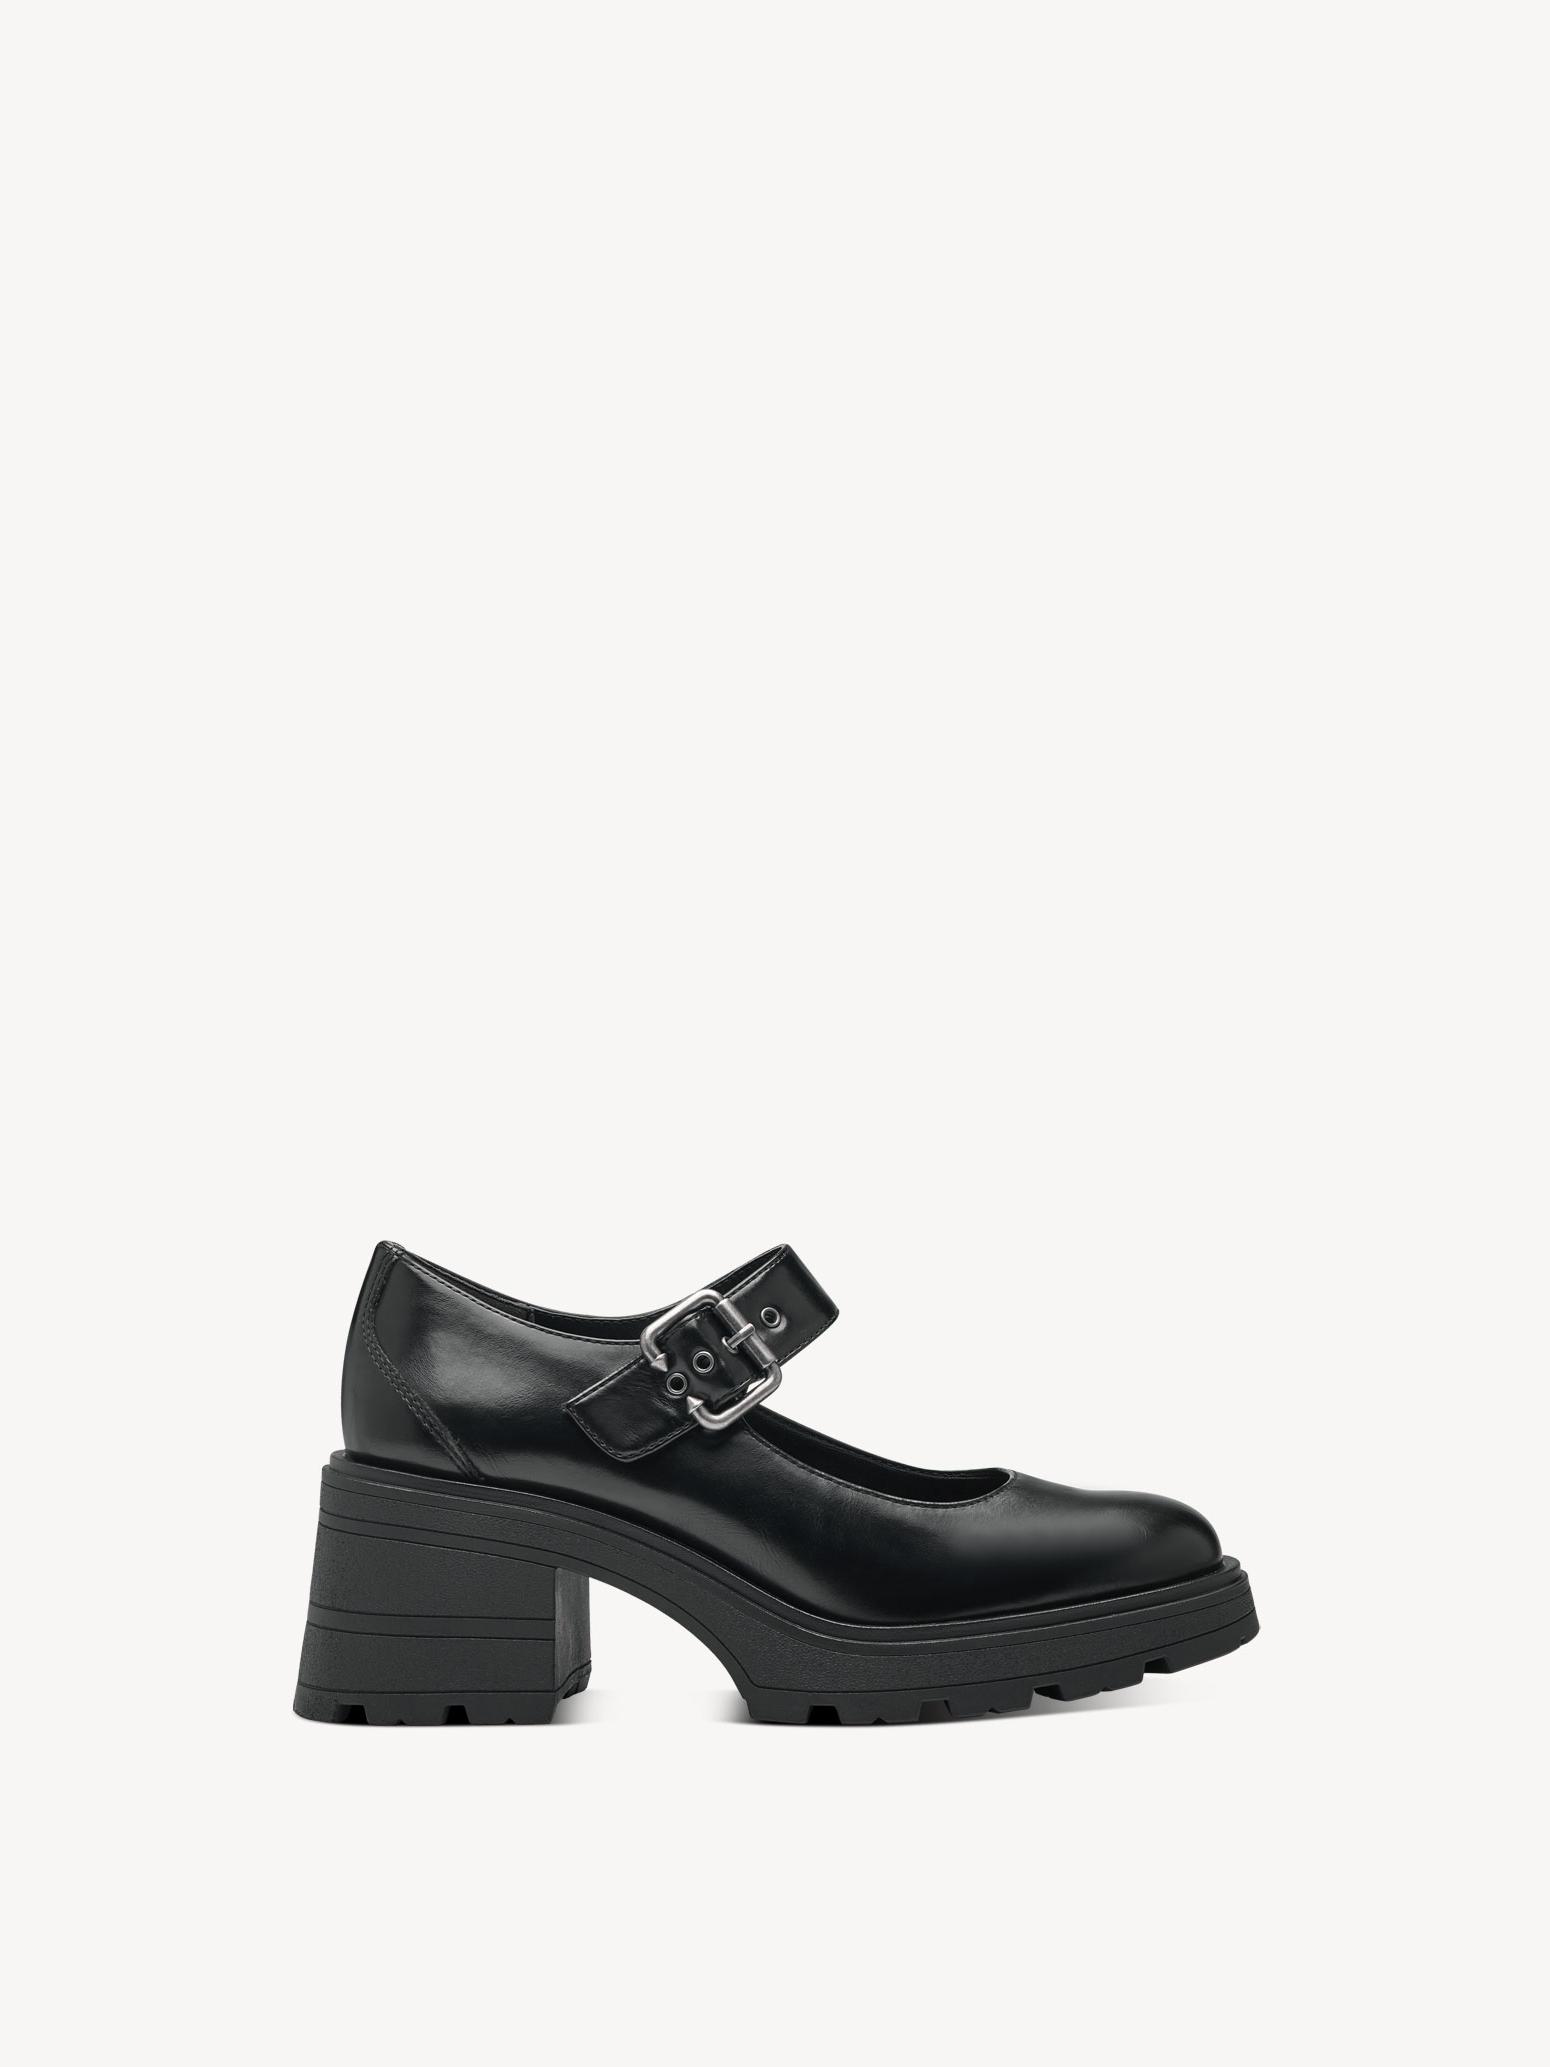 Туфли женские Tamaris 1-24430-41-001 черные 37 RU